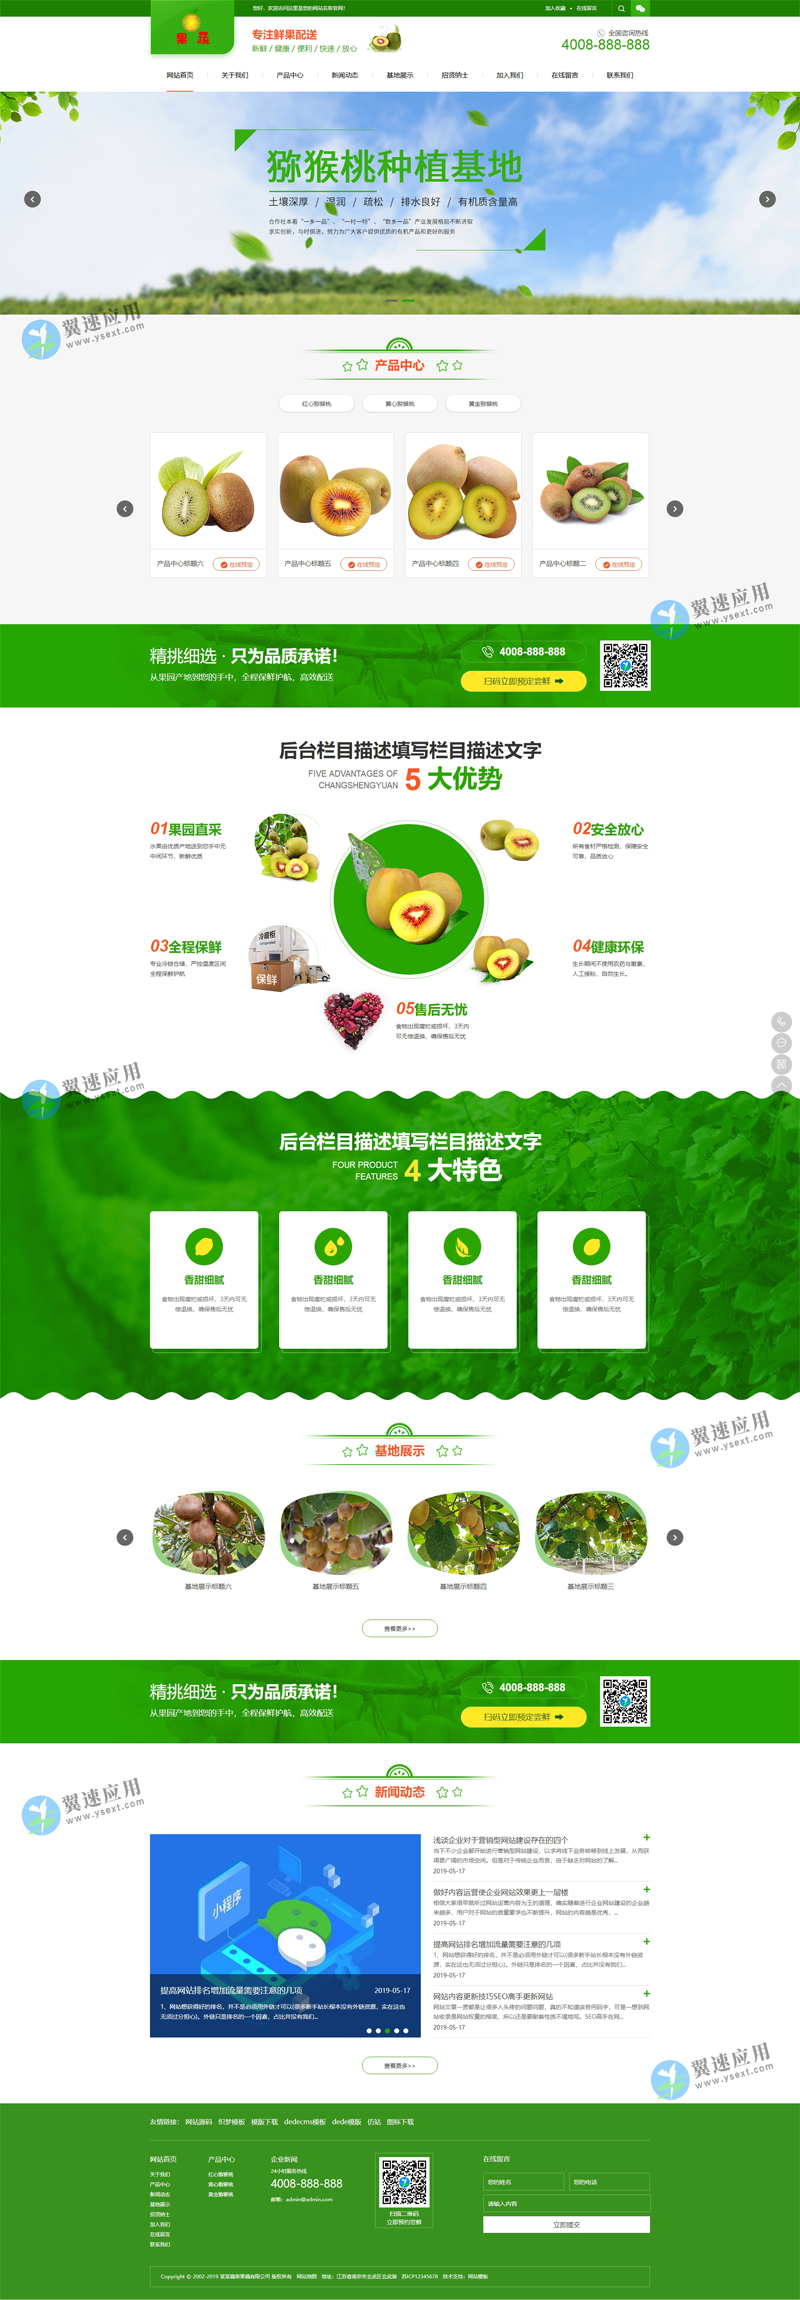 蔬菜水果网站模板图片.jpg